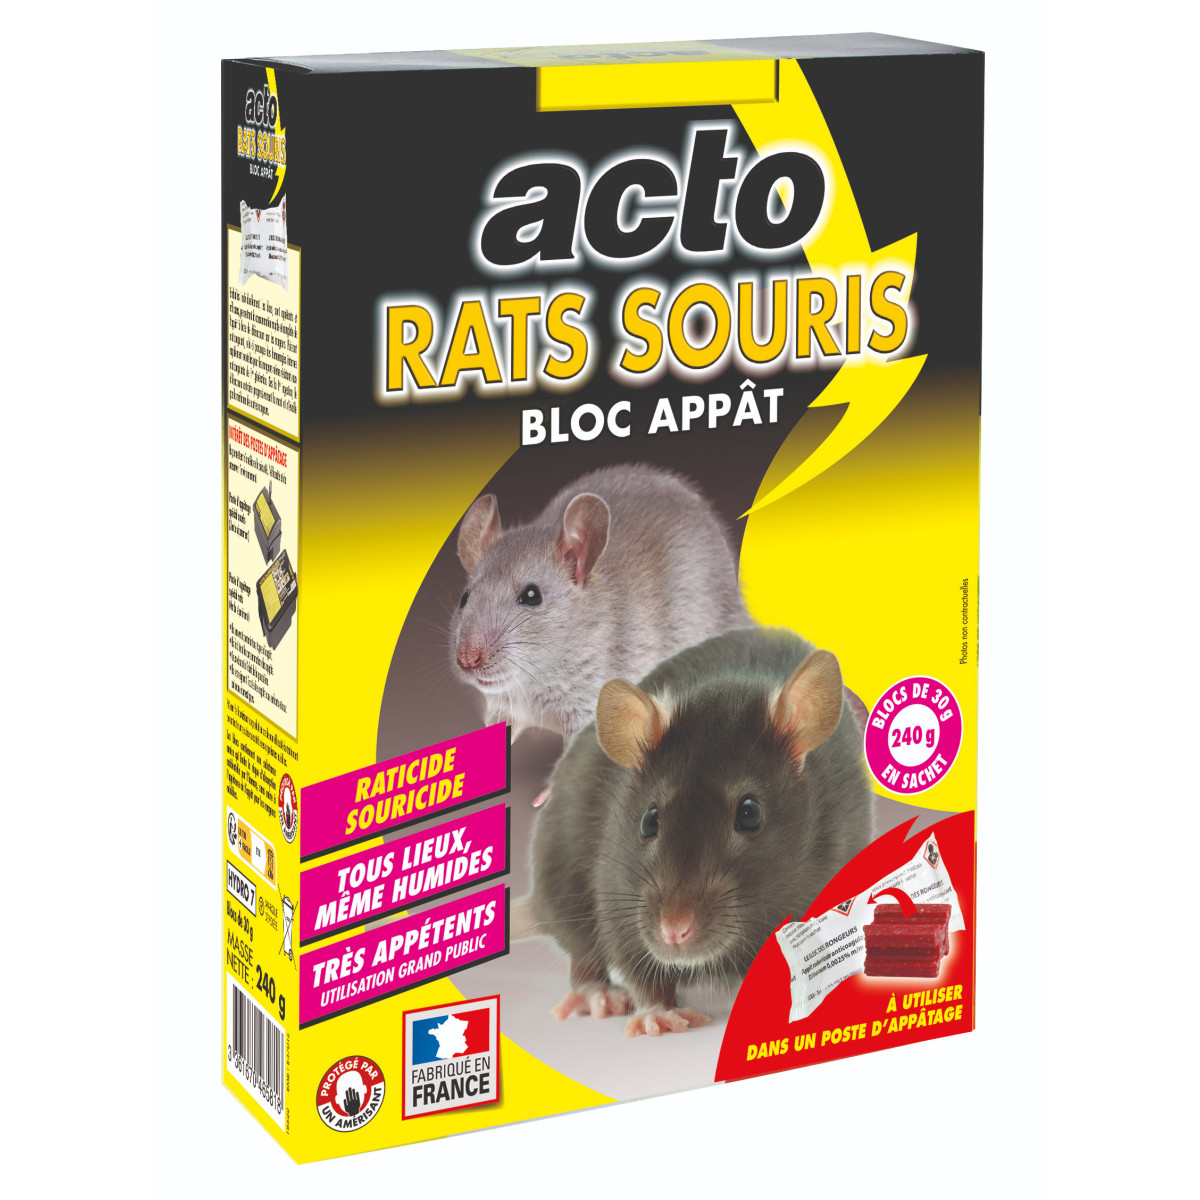 Acto rats - souris blocs appâts - 8 x 30 grs - le meilleur choix pour une dérati